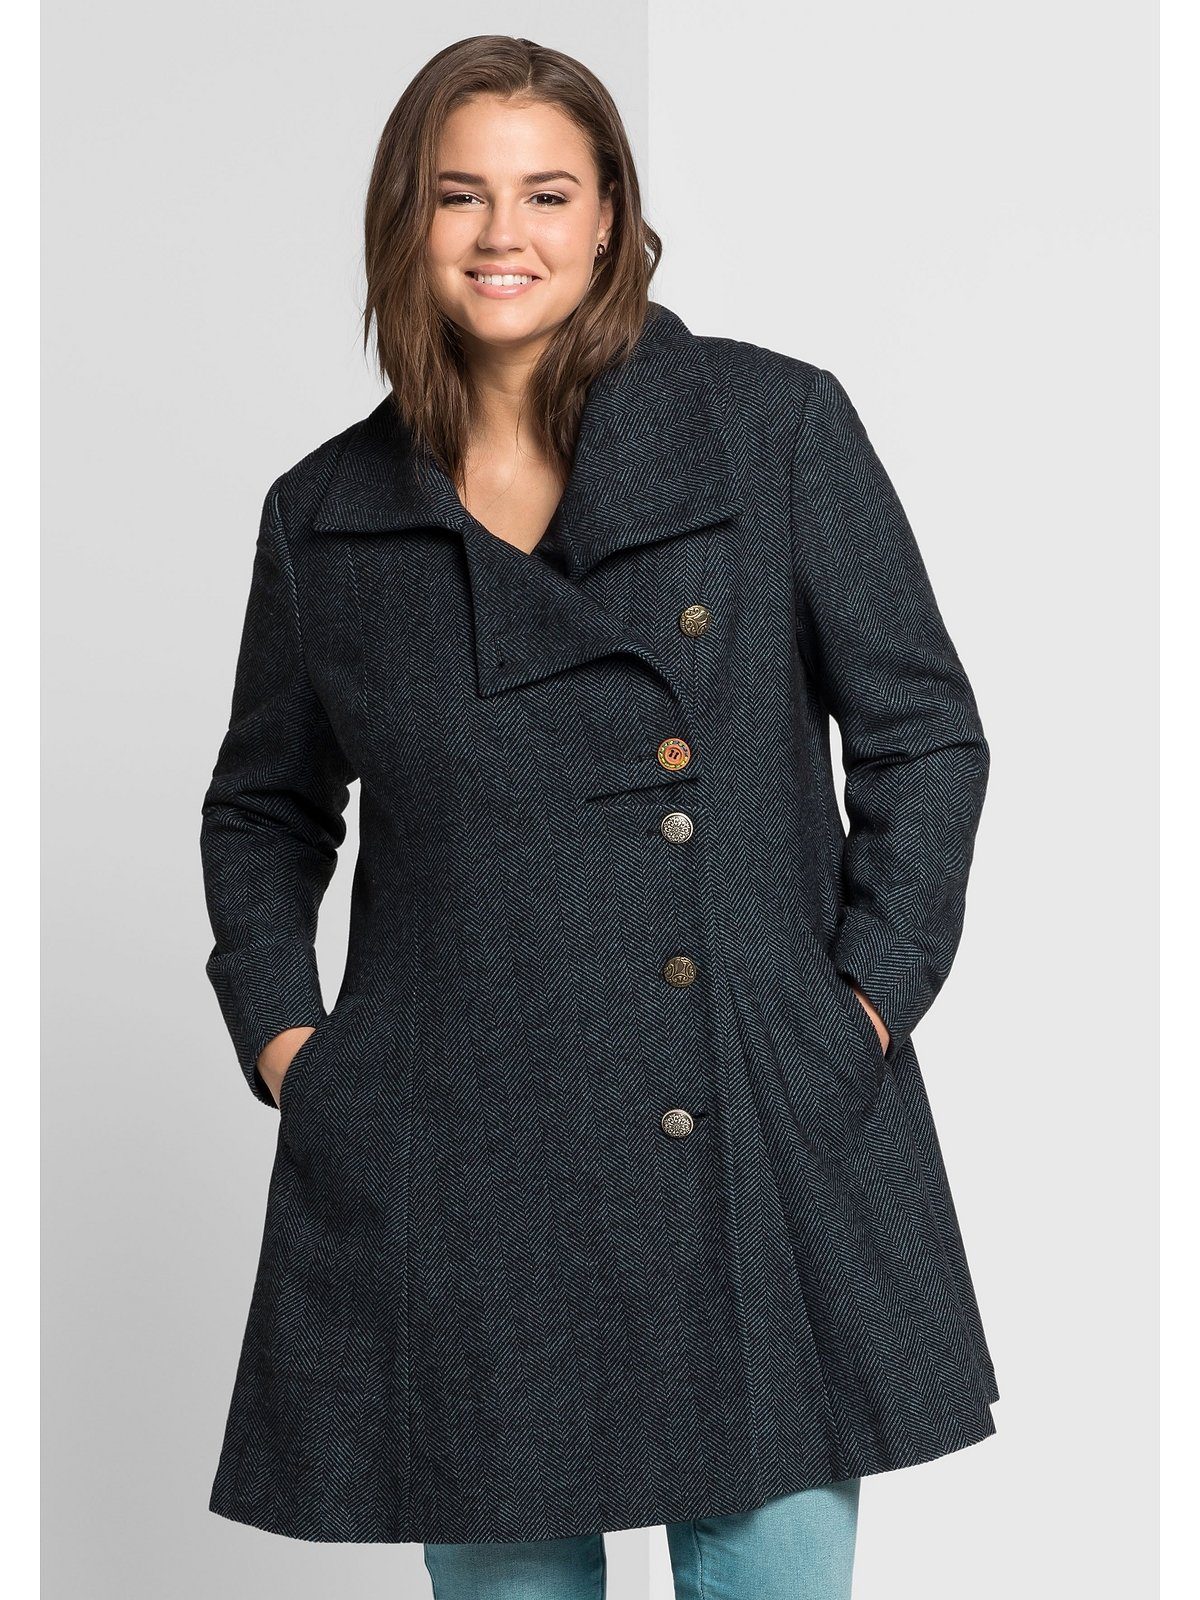 Mantel in bunt online kaufen | OTTO